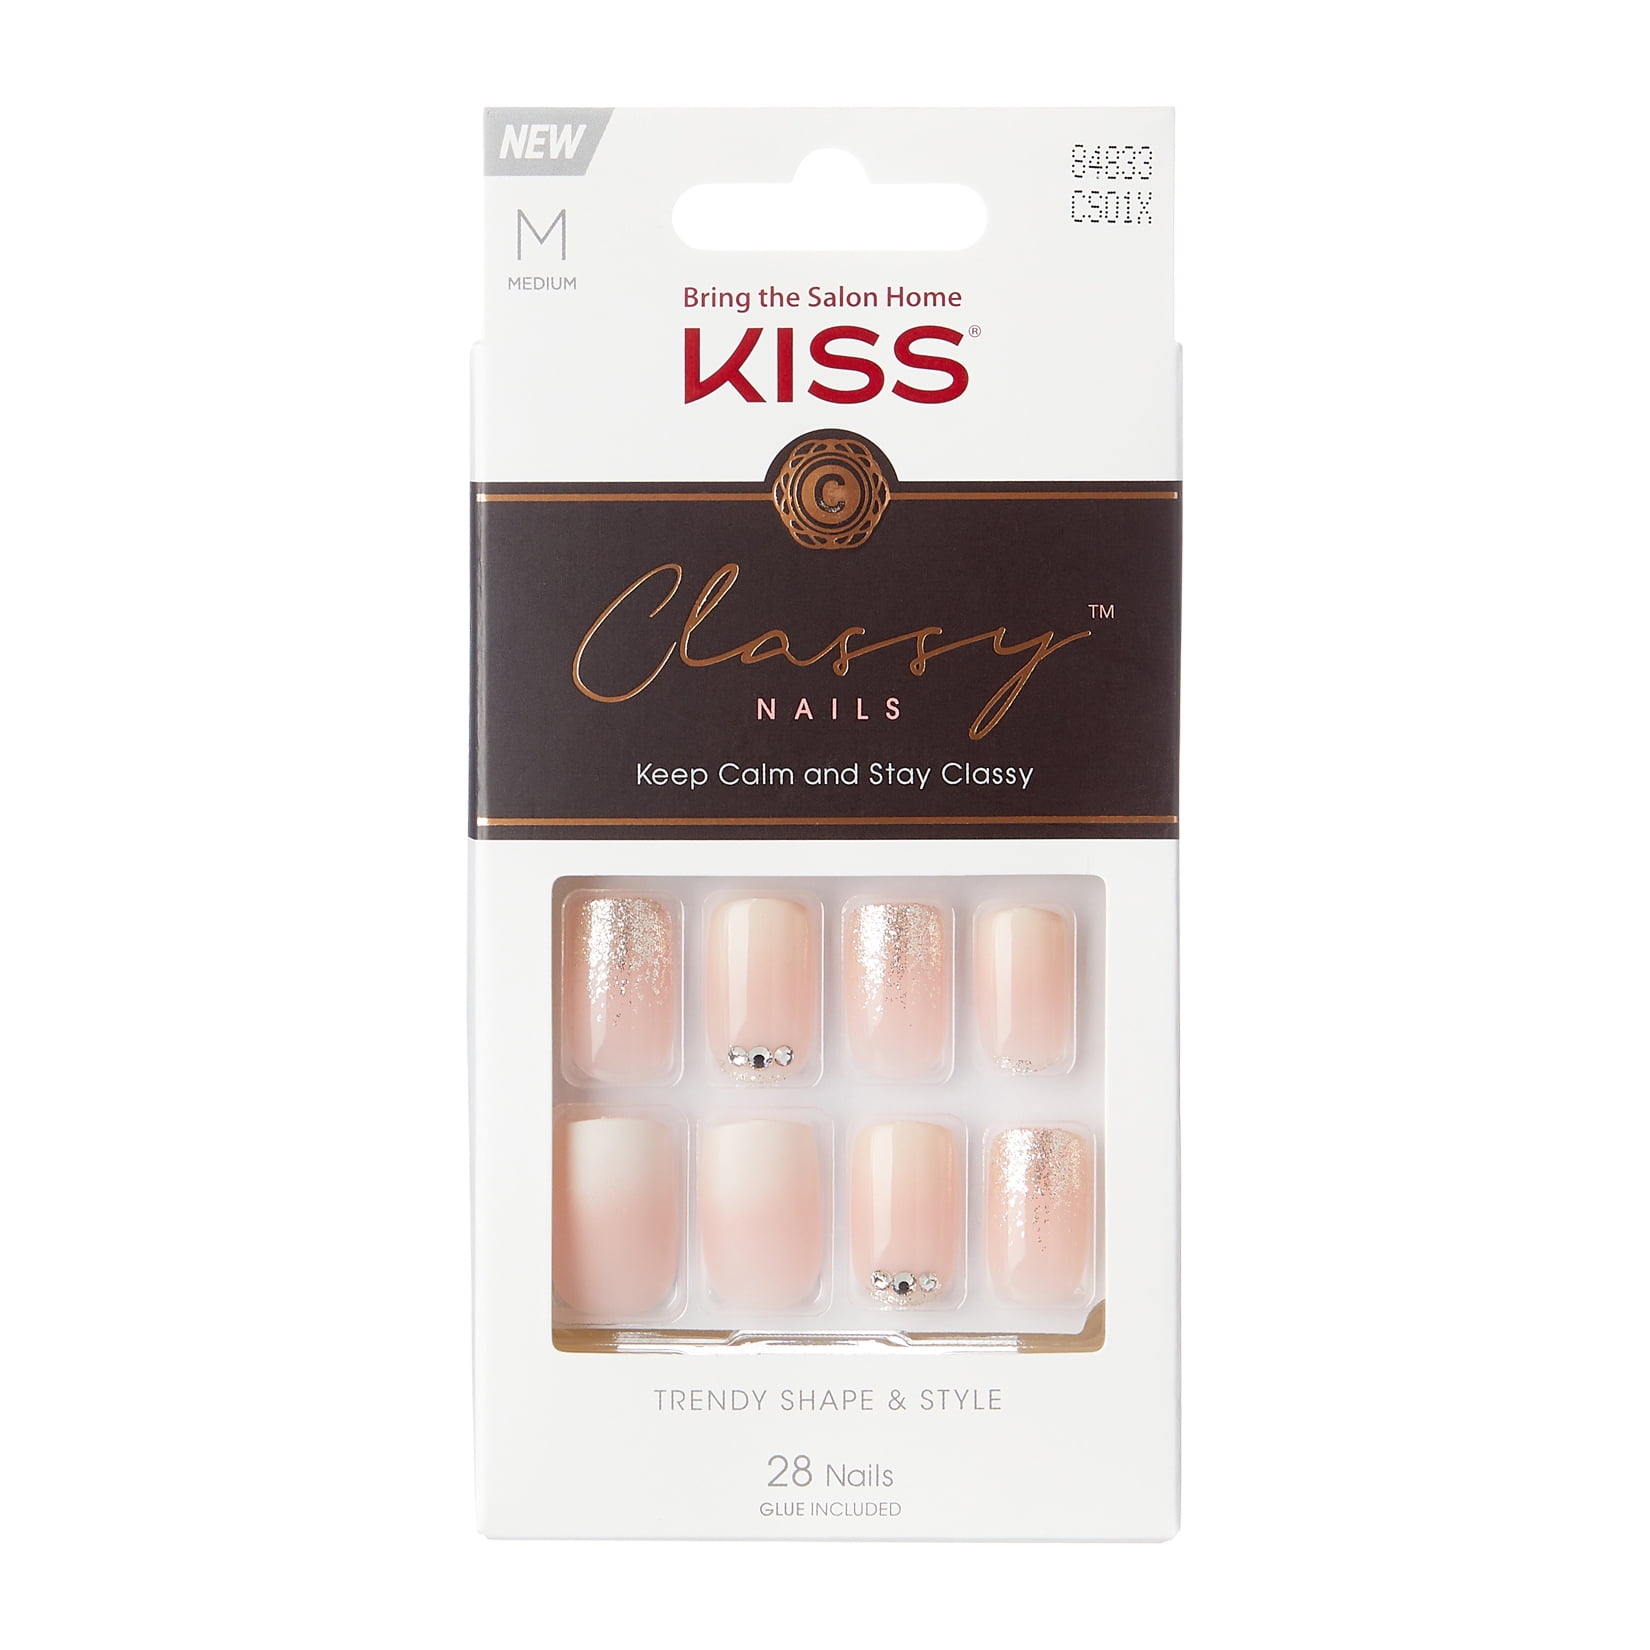 KISS USA Classy Nails- Relax Moment, 28 Nails - Walmart.com - Walmart.com